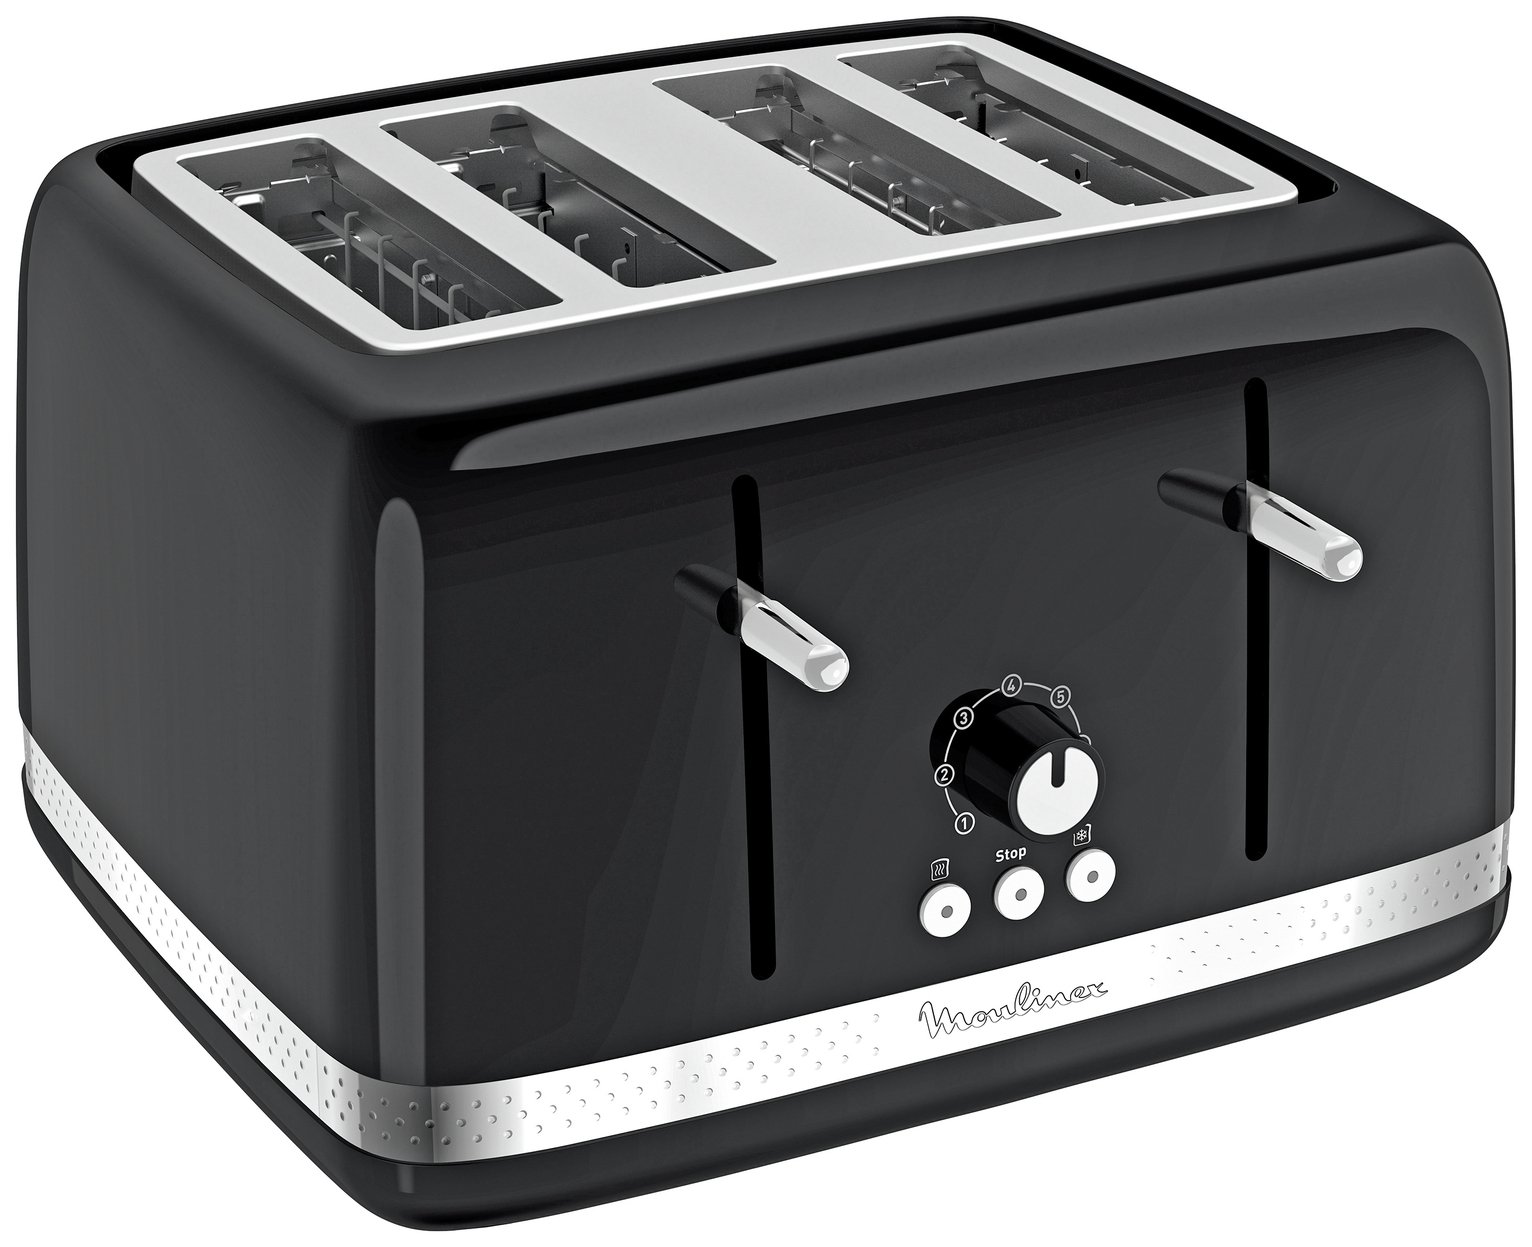 Moulinex 4 Slice Toaster - Black